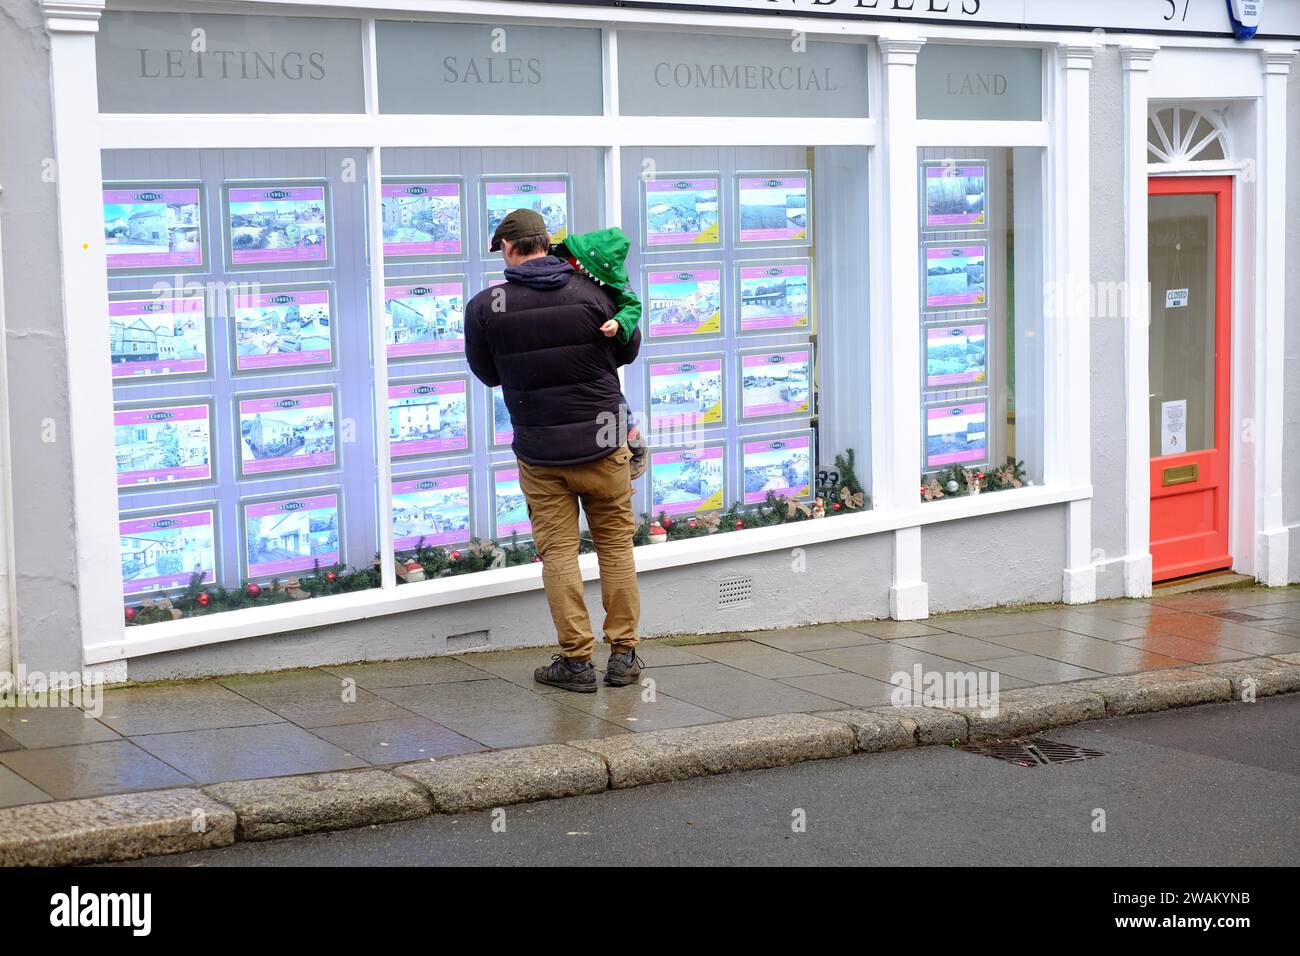 L'uomo che tiene in braccio un bambino si trova fuori dall'ufficio dell'agente immobiliare e guarda gli annunci di vendita e affitto di immobili nella finestra. Totnes, Devon, Regno Unito Foto Stock